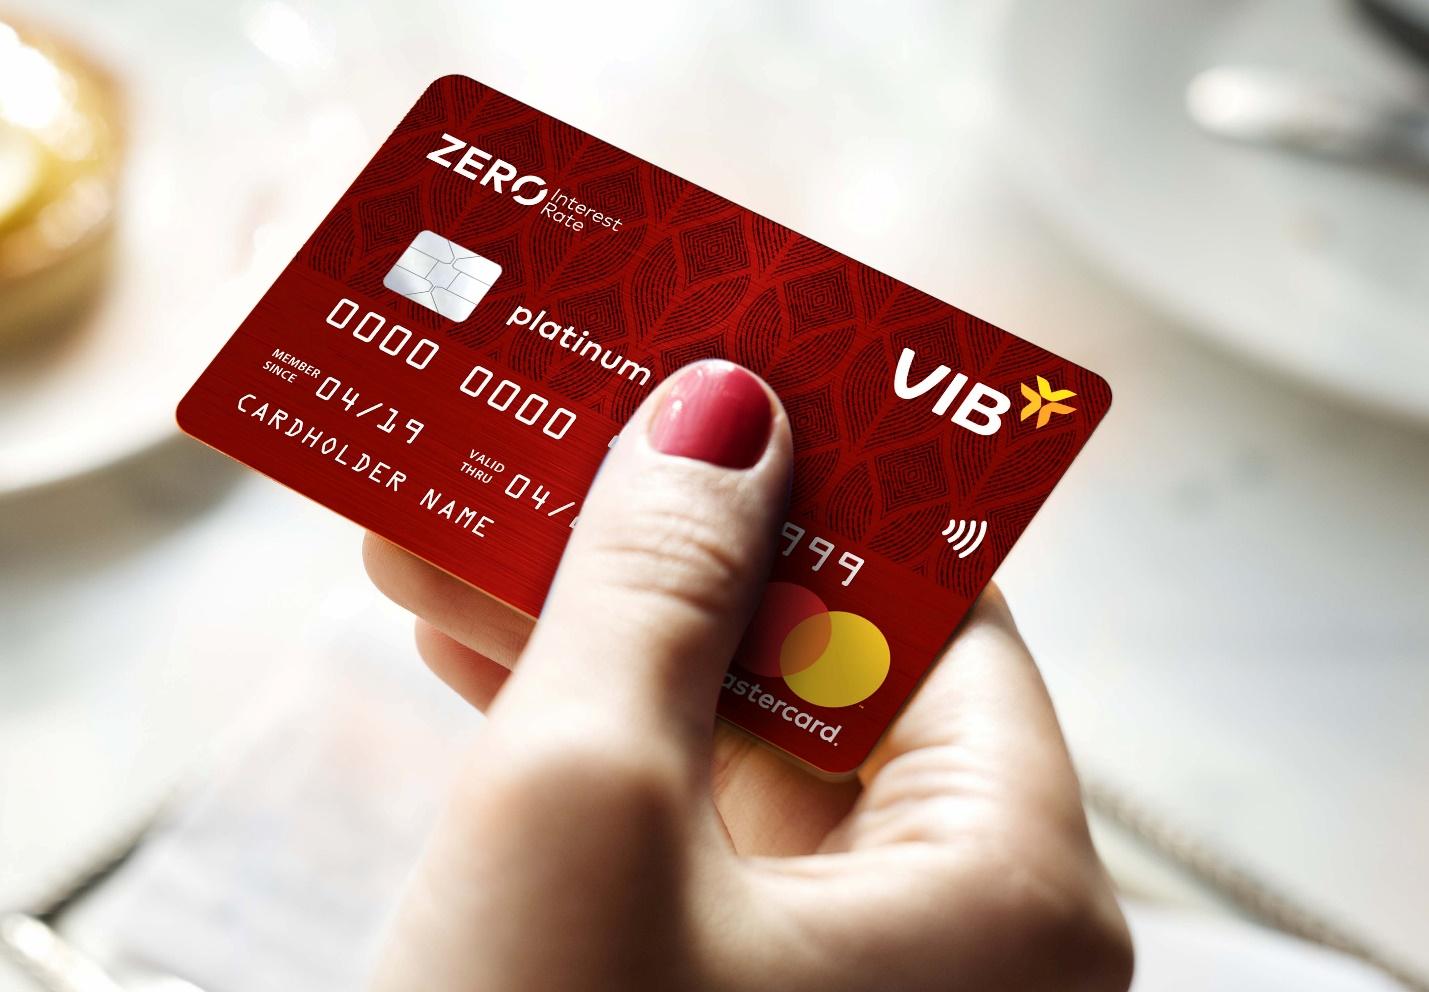 VIB công bố đợt 1 khách hàng mở thẻ tín dụng trúng cặp vé du lịch châu Á - Ảnh 2.